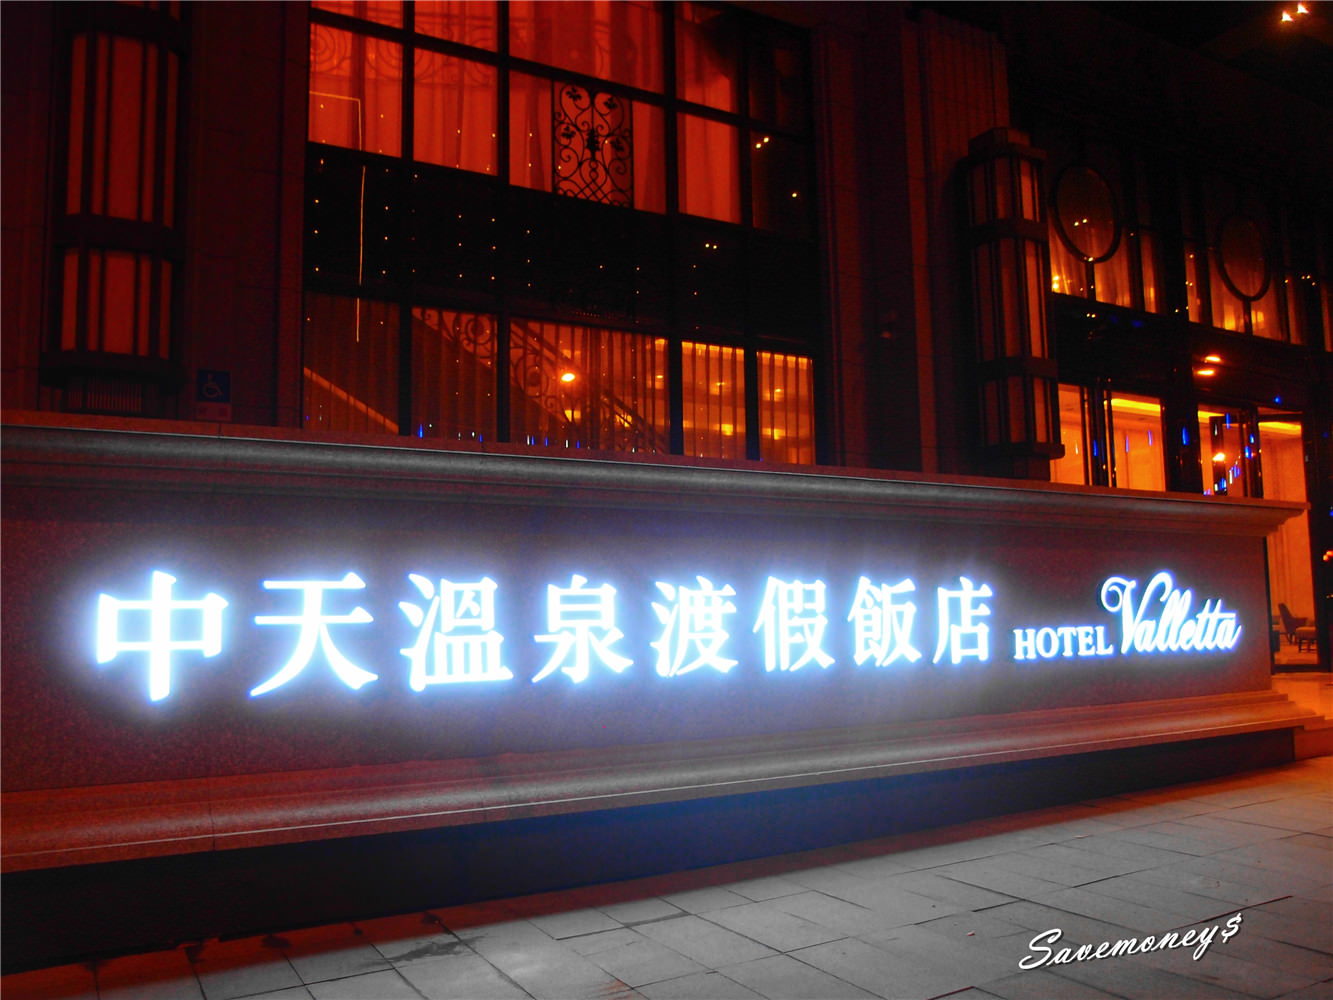 宜蘭景點│ 礁溪迎賓廣場+中天溫泉渡假飯店,夜景很迷人喔!